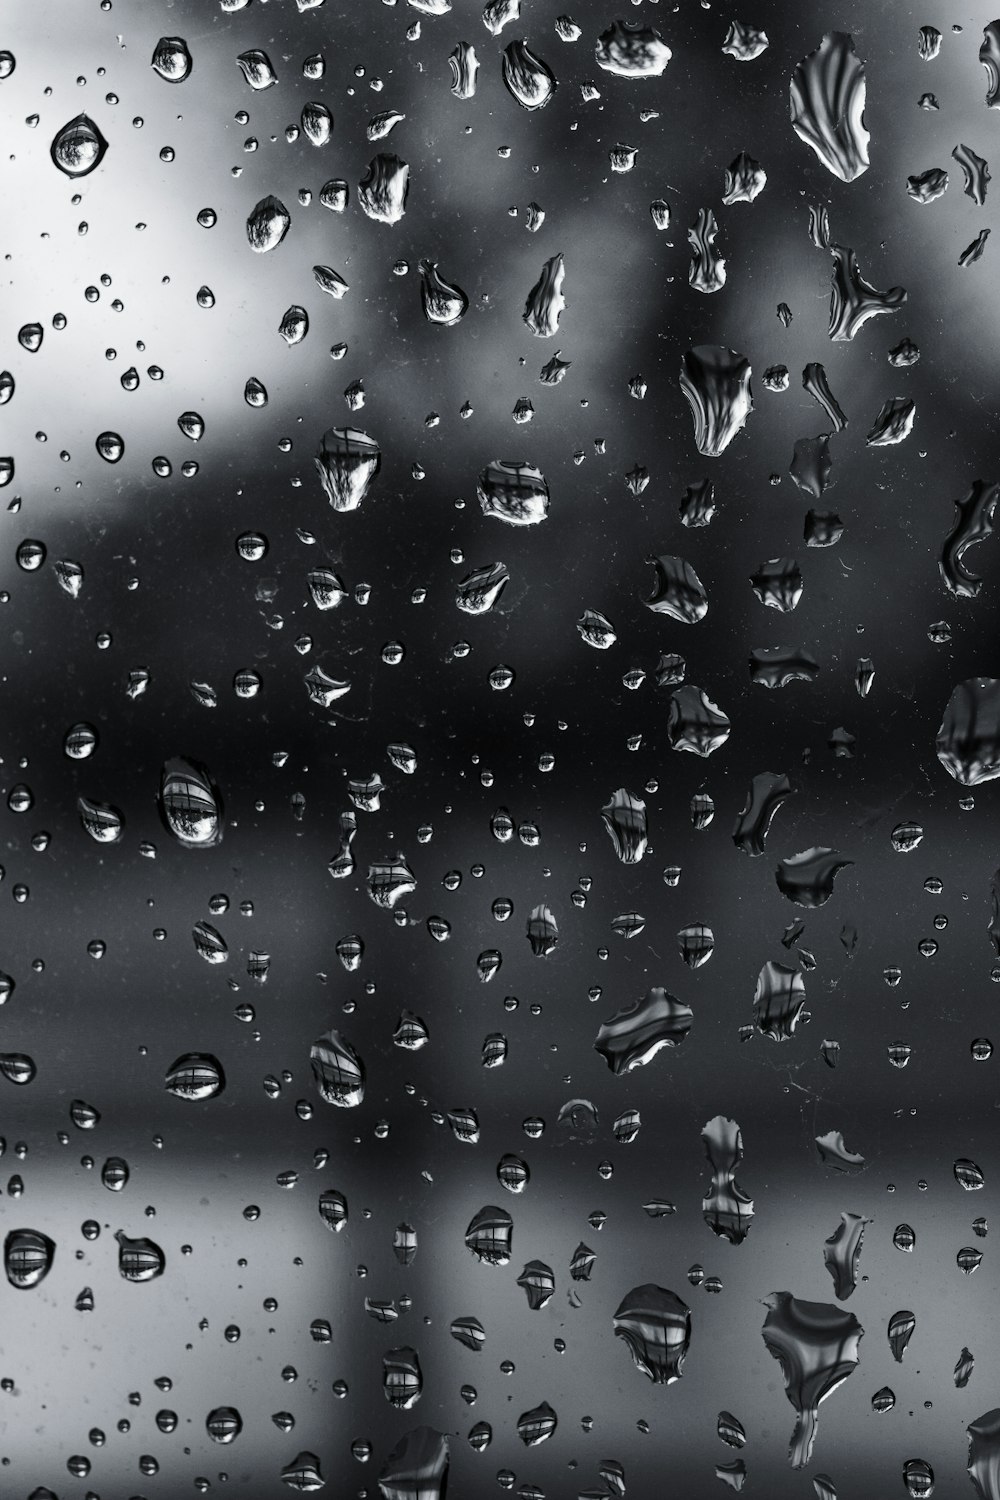 Una foto en blanco y negro de gotas de lluvia en una ventana